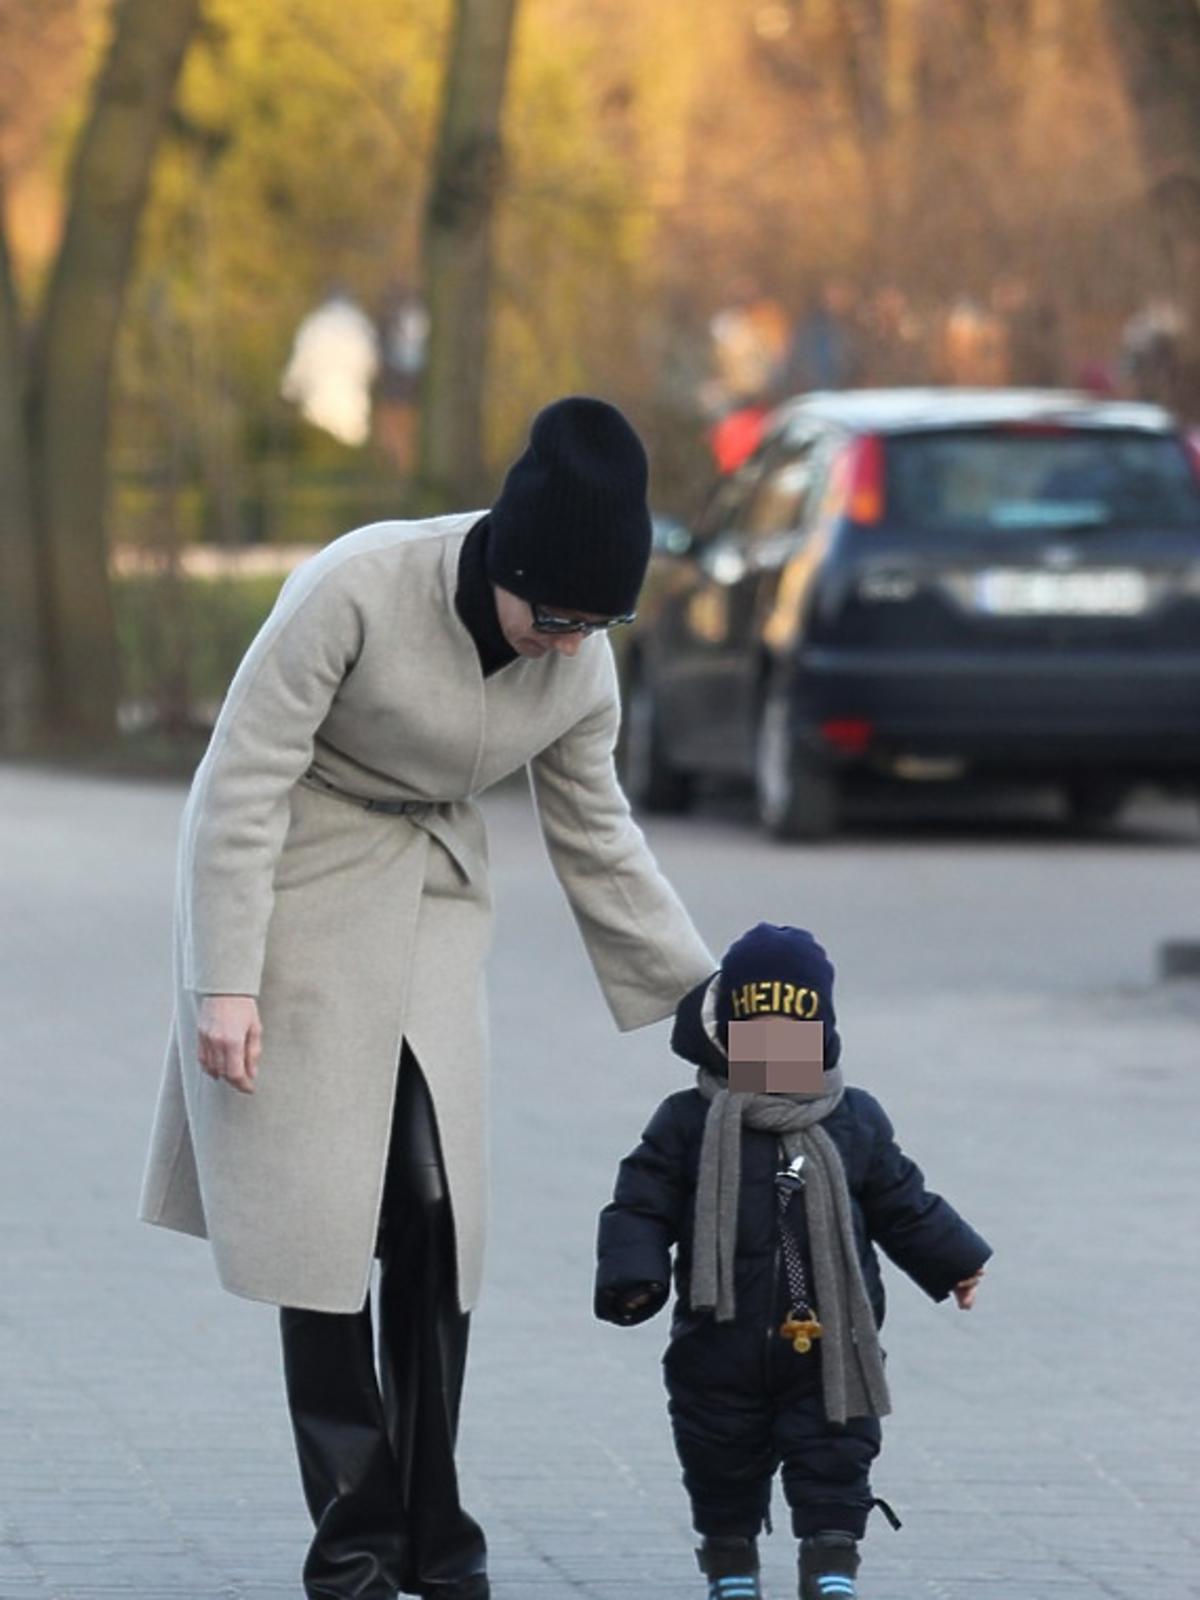 Małgorzata Kożuchowska w czarnych skórzanych spodniach z synem Jankiem w niebieskim kombinezonie idą ulicą